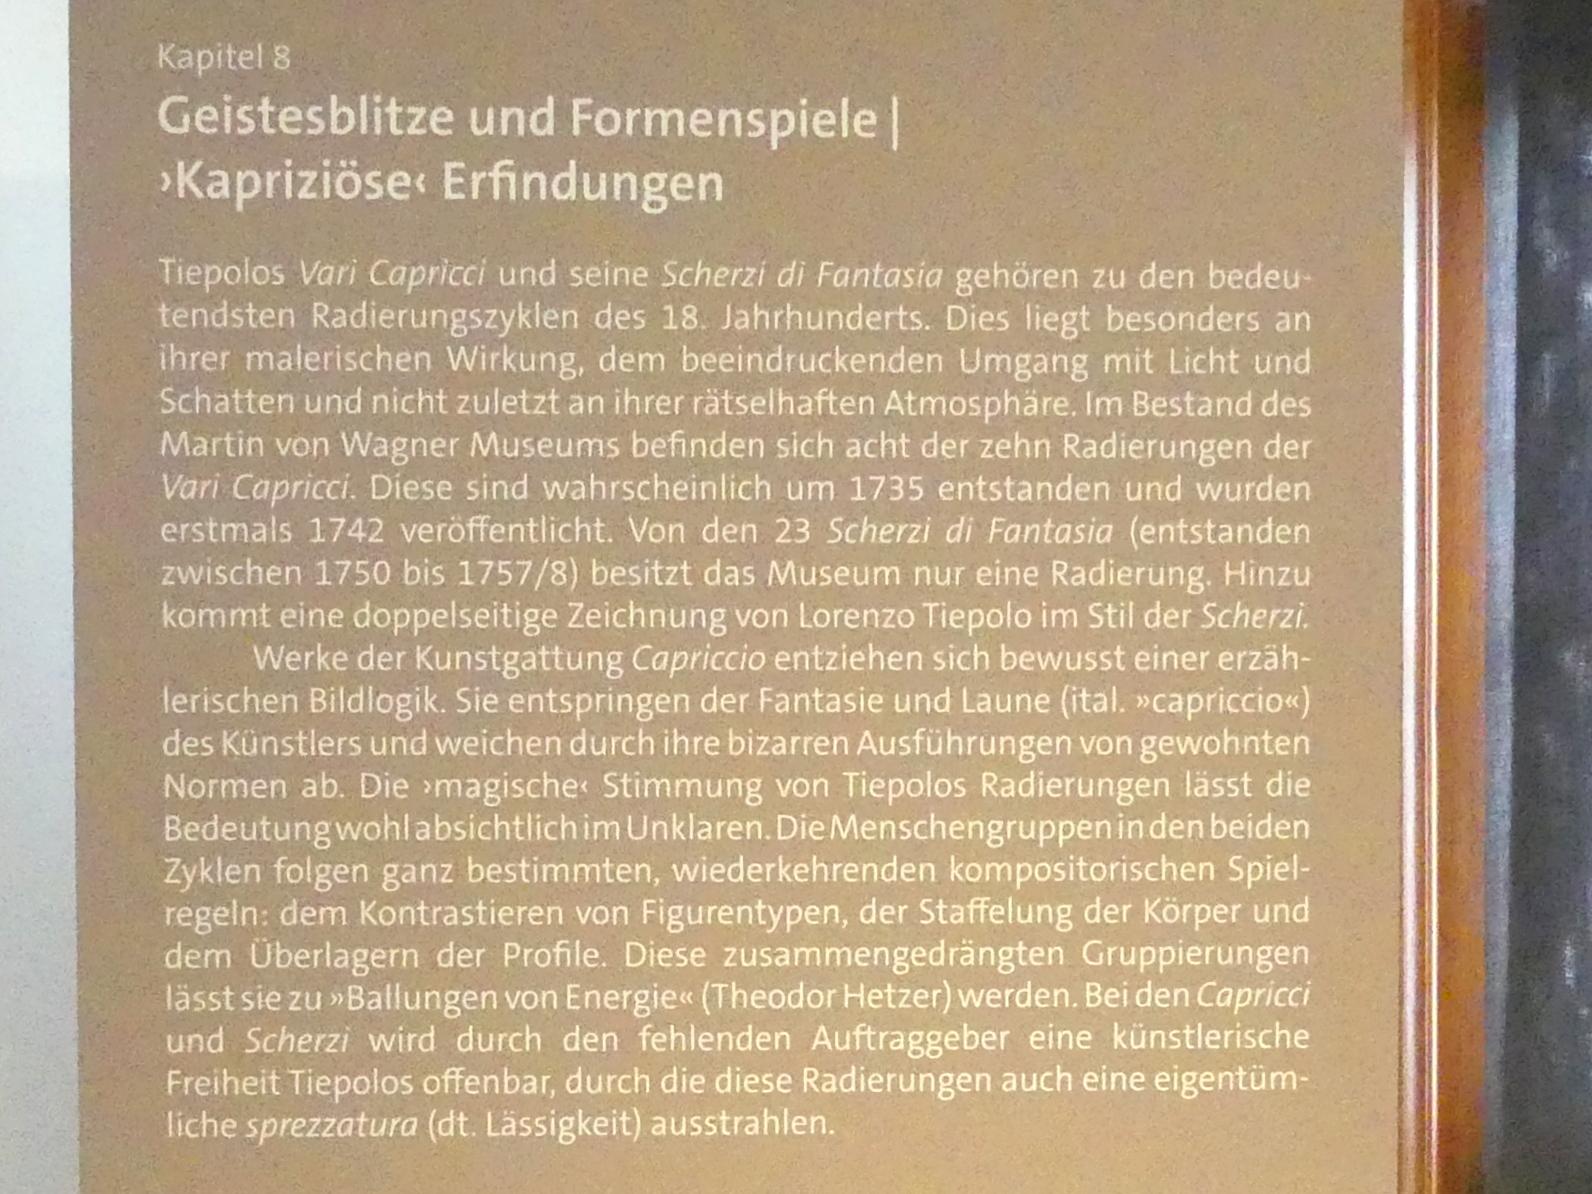 Würzburg, Martin von Wagner Museum, Ausstellung "Tiepolo und seine Zeit in Würzburg" vom 31.10.2020-15.07.2021, Bild 7/12